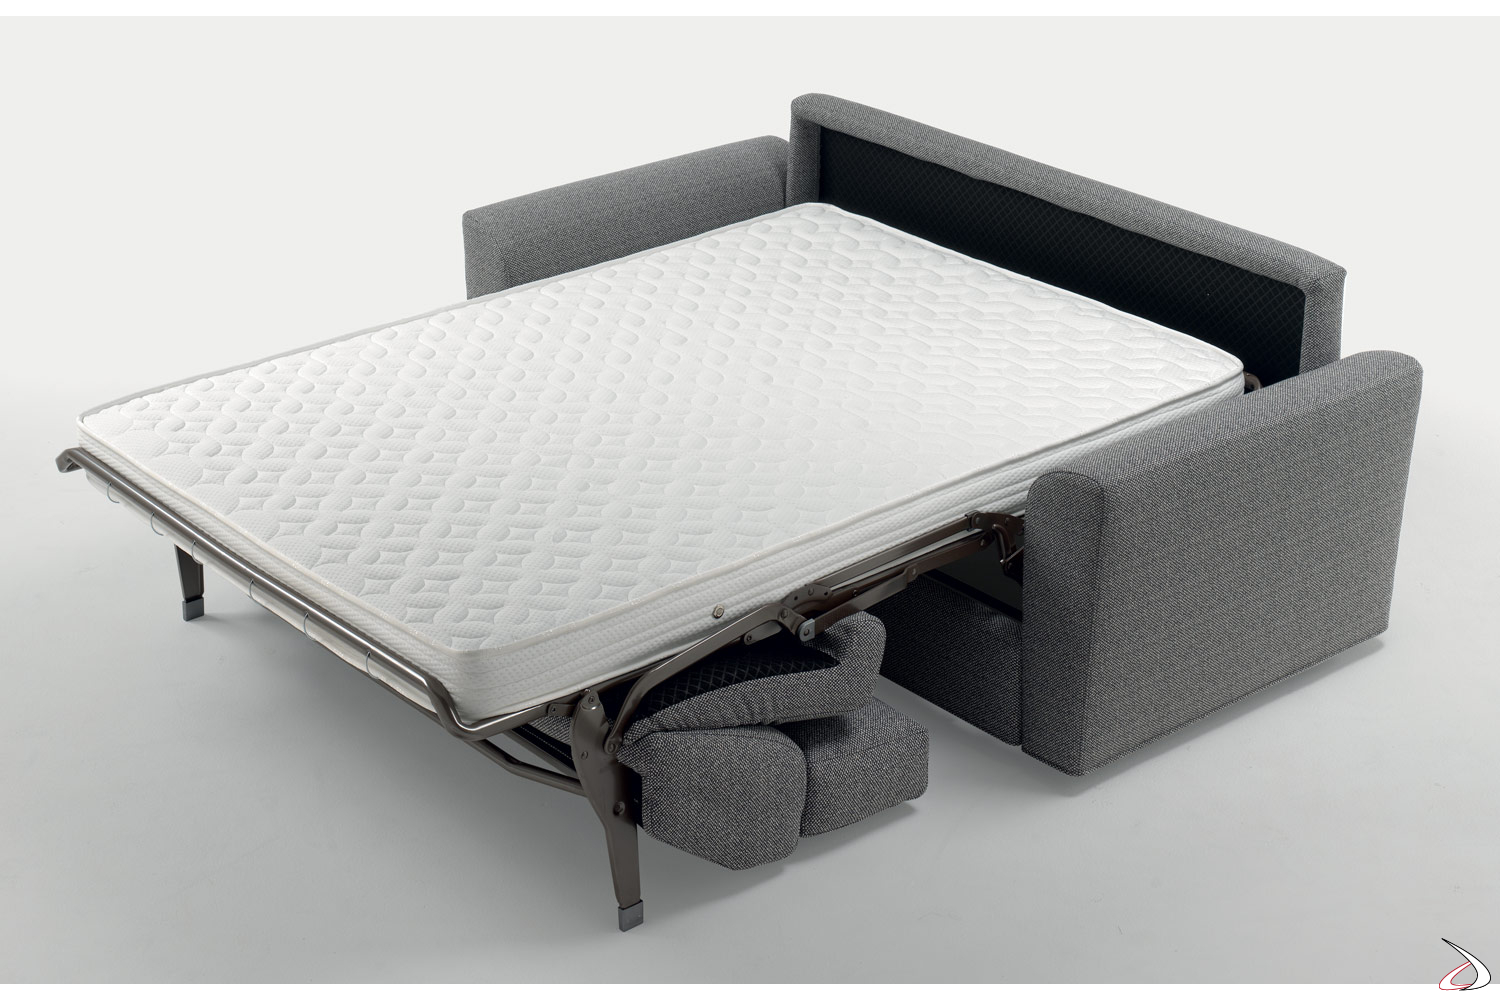 Mini Divano Letto.Laxy Double Sofa Bed Toparredi Arredo Design Online